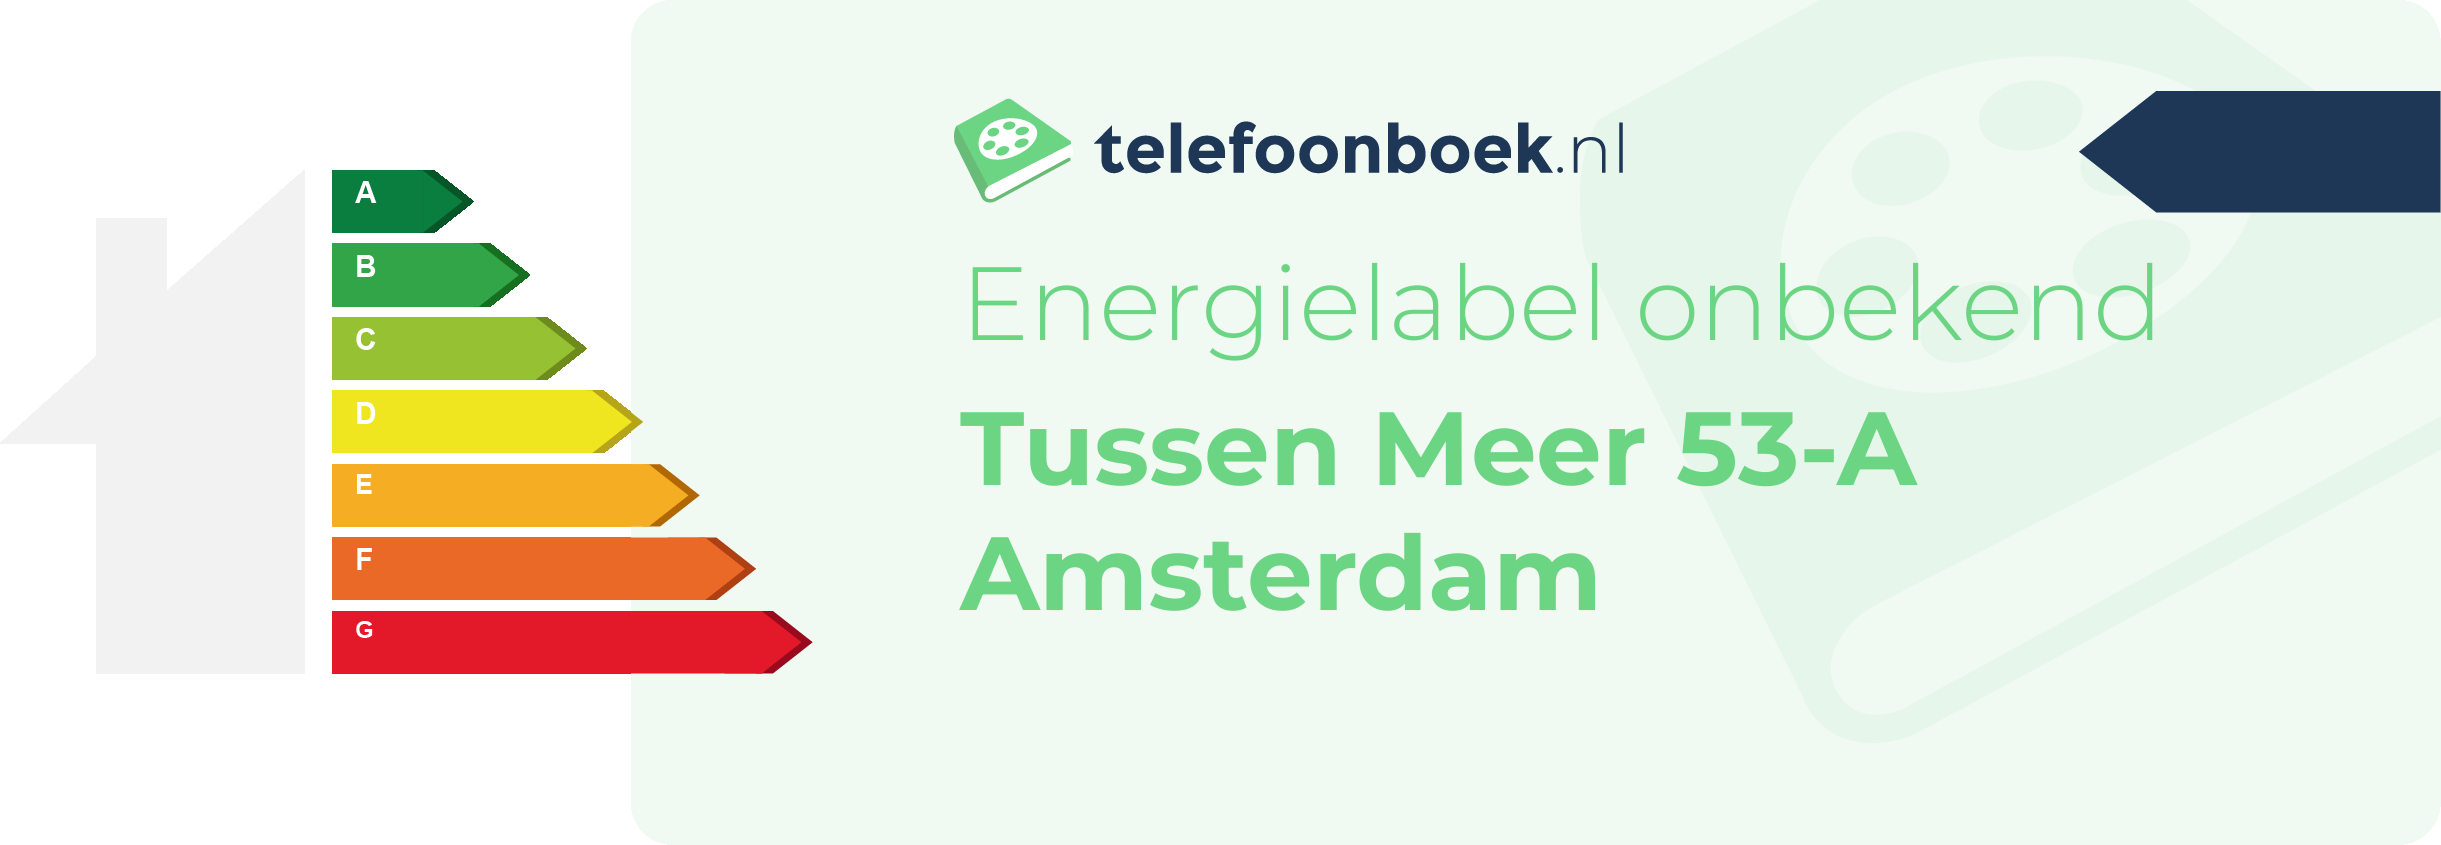 Energielabel Tussen Meer 53-A Amsterdam